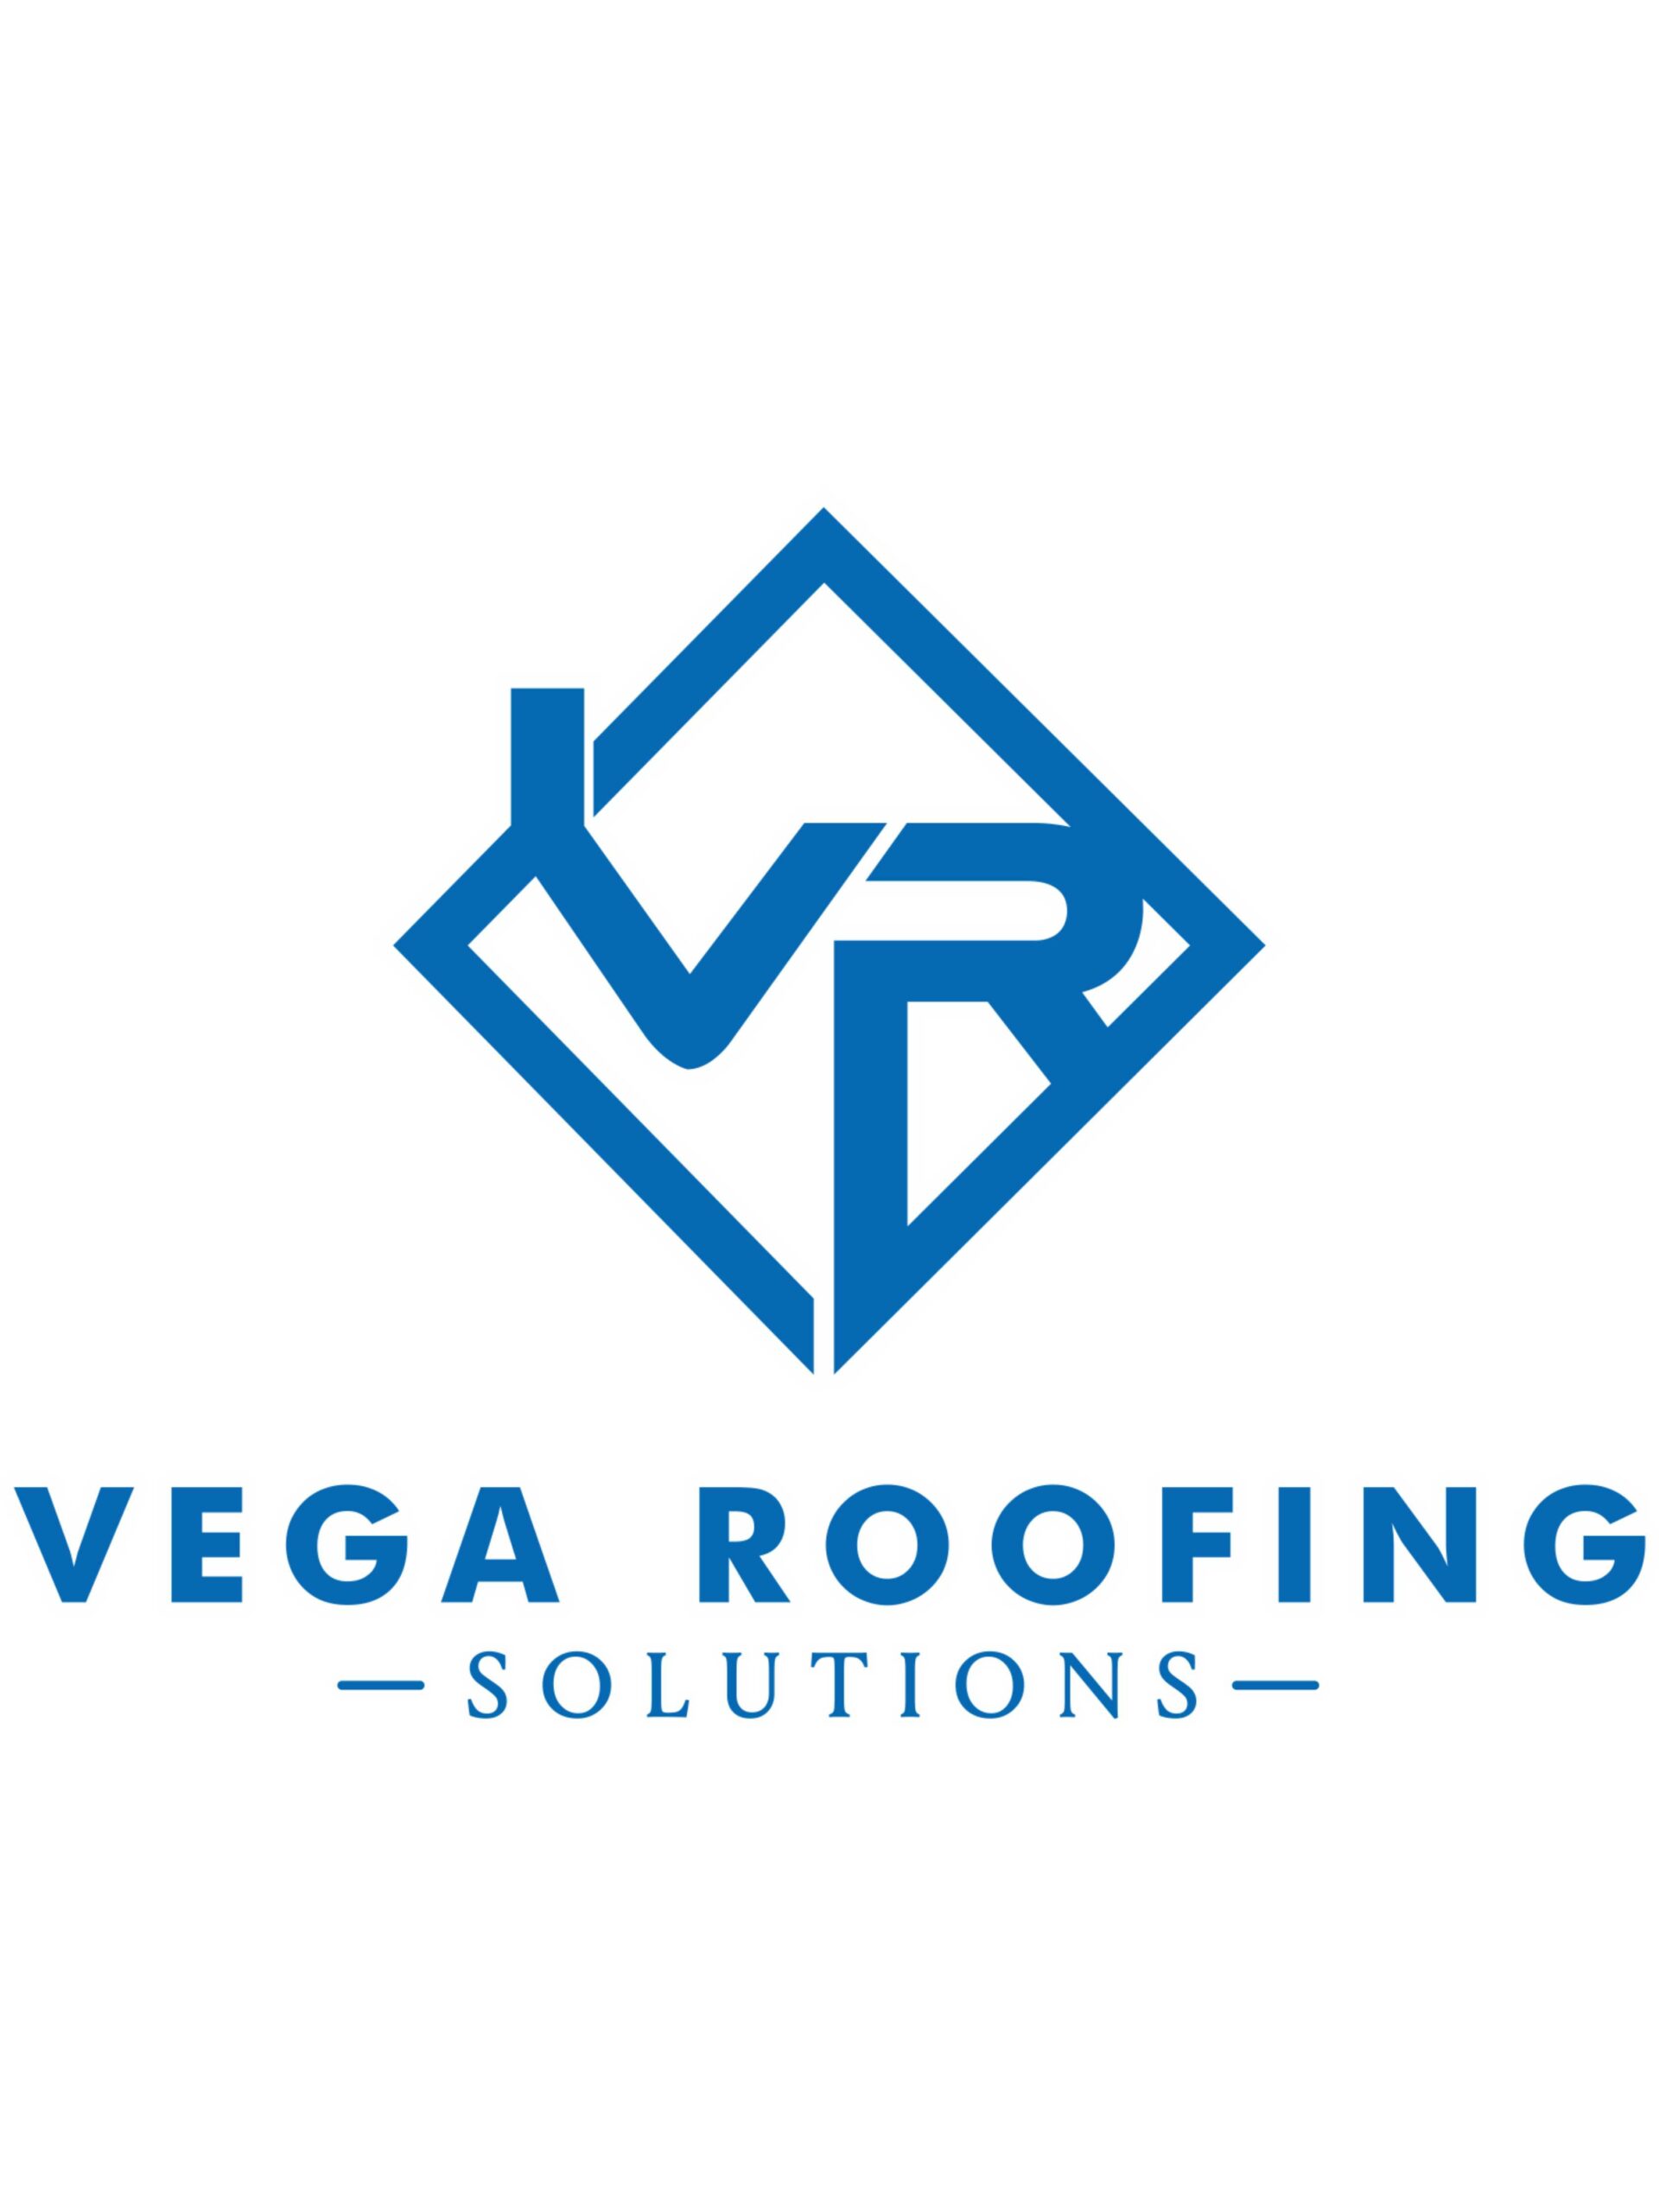 Vega Roofing